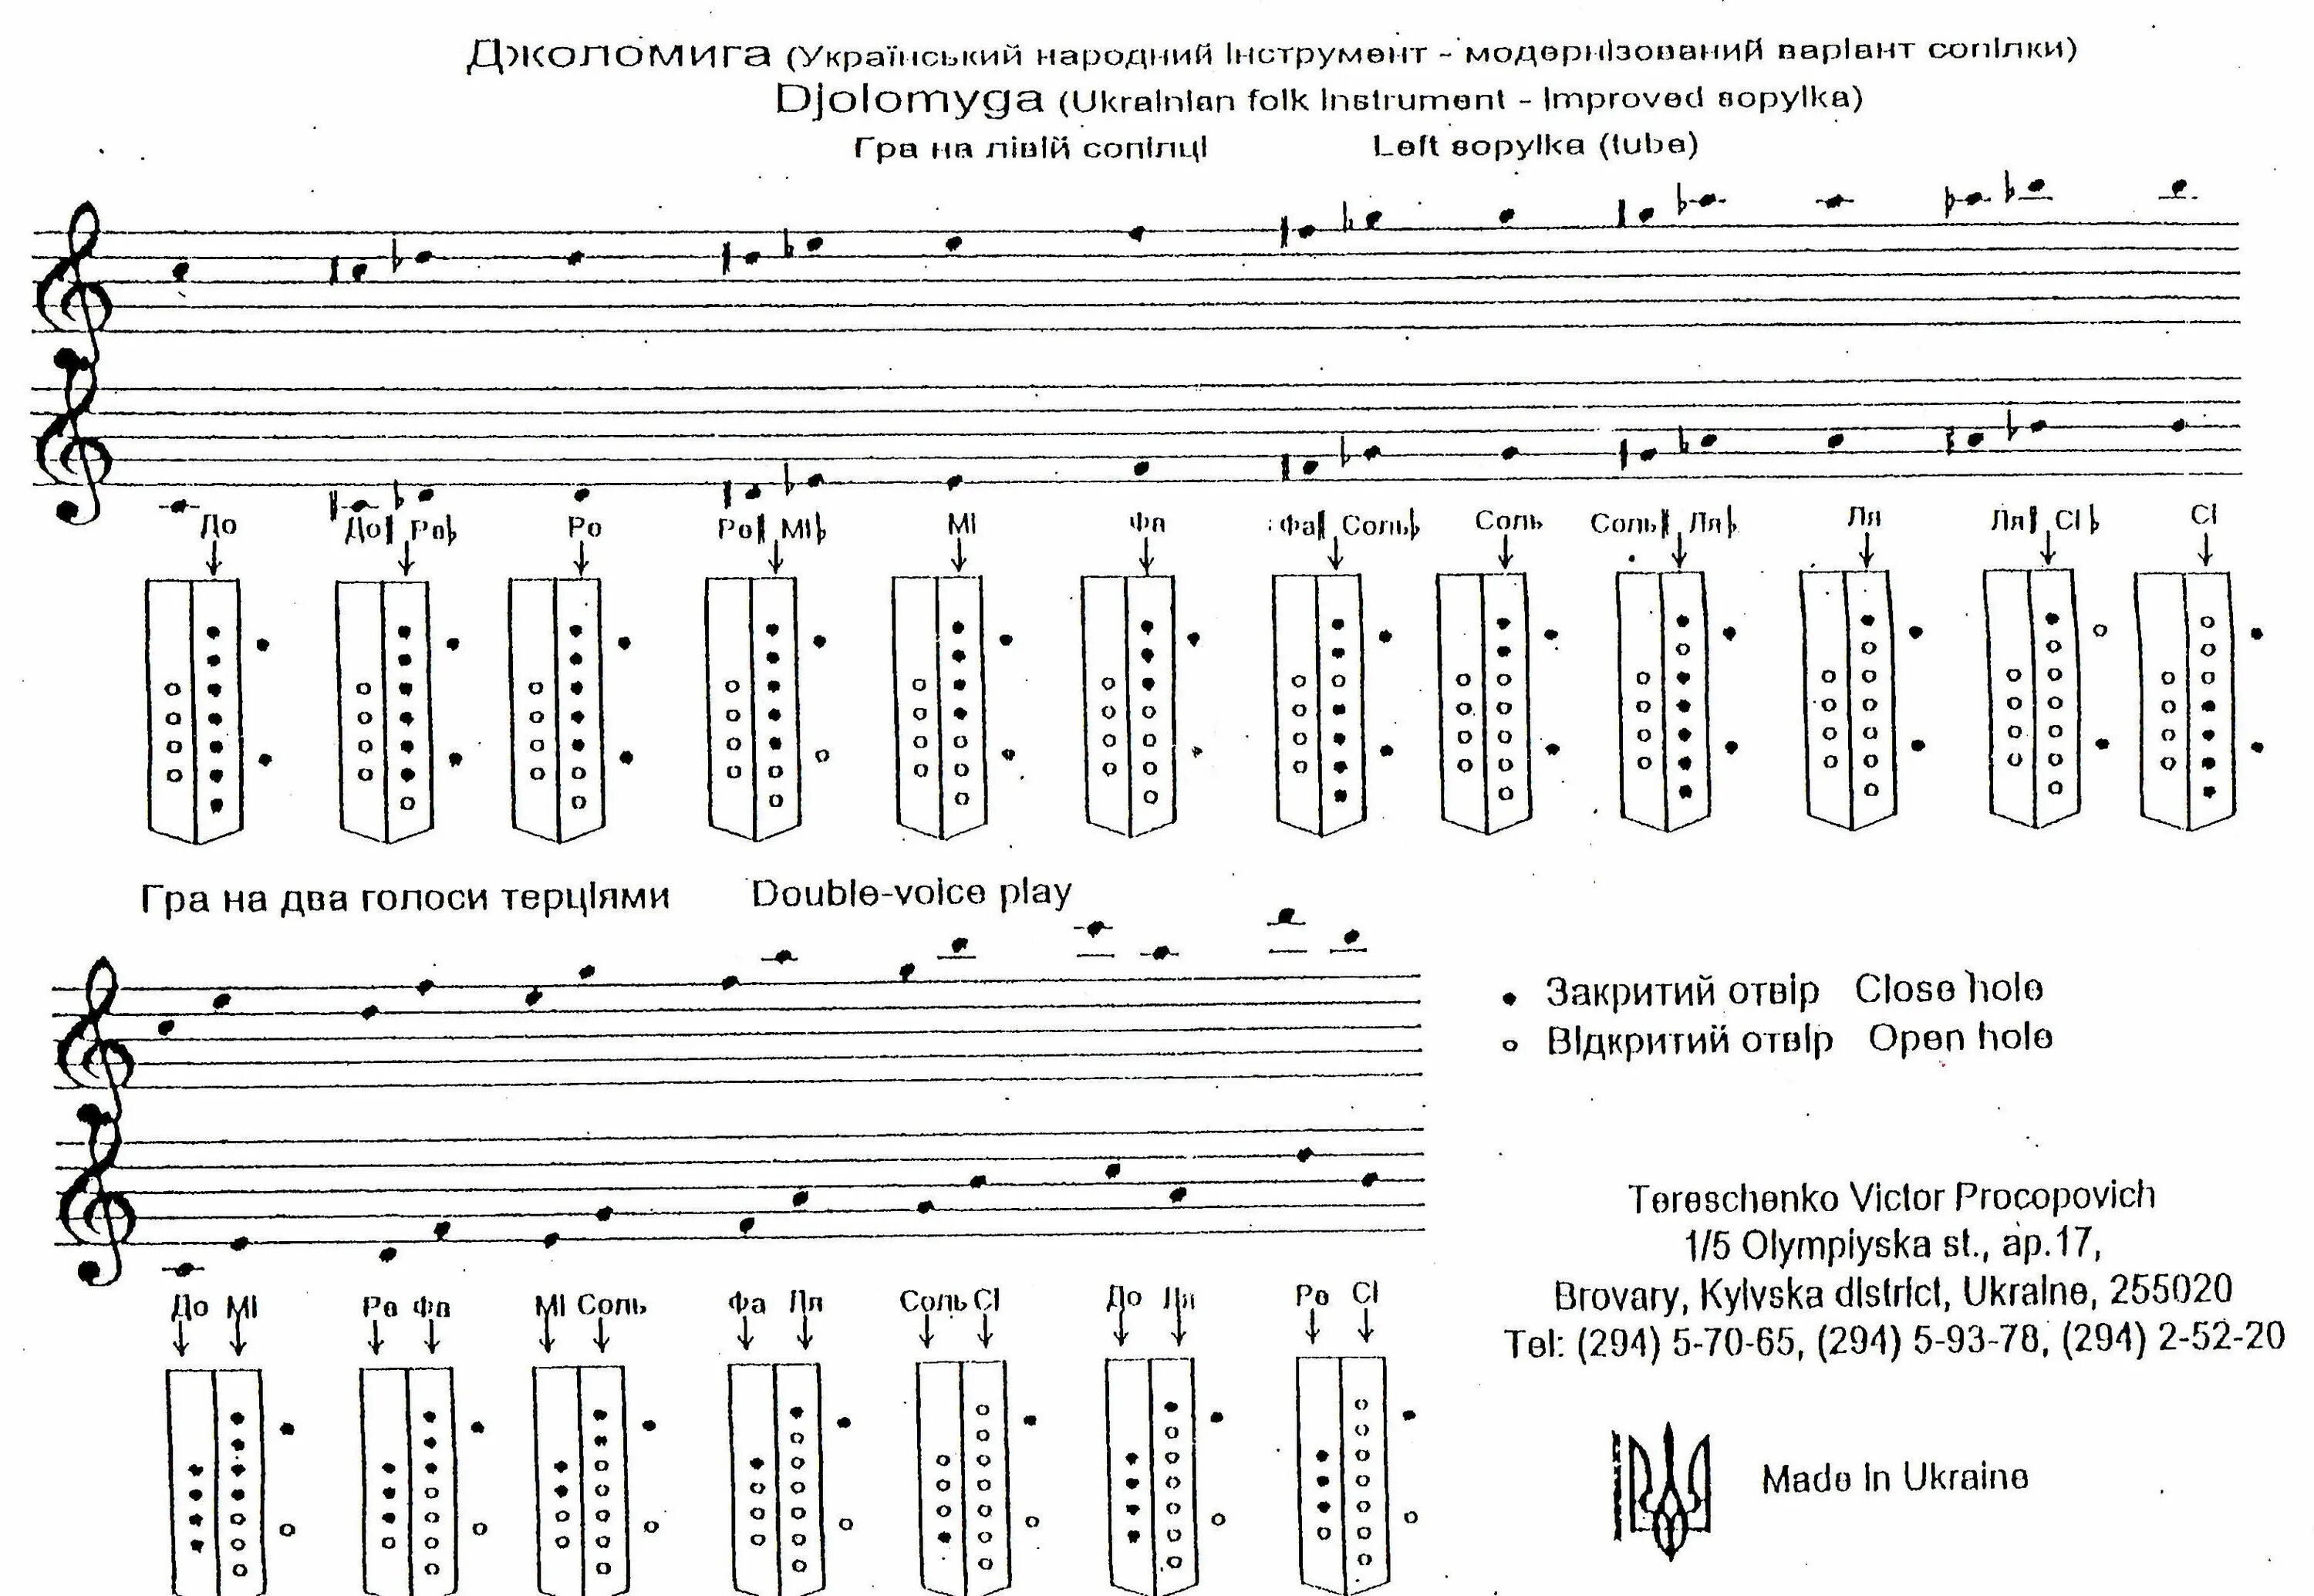 Как играть на флейте. Аппликатура блокфлейты немецкой системы Yamaha. Таблица аппликатуры для блокфлейты сопрано. Аппликатура поперечной флейты 3 Октава. Аппликатура сопилки хроматической.